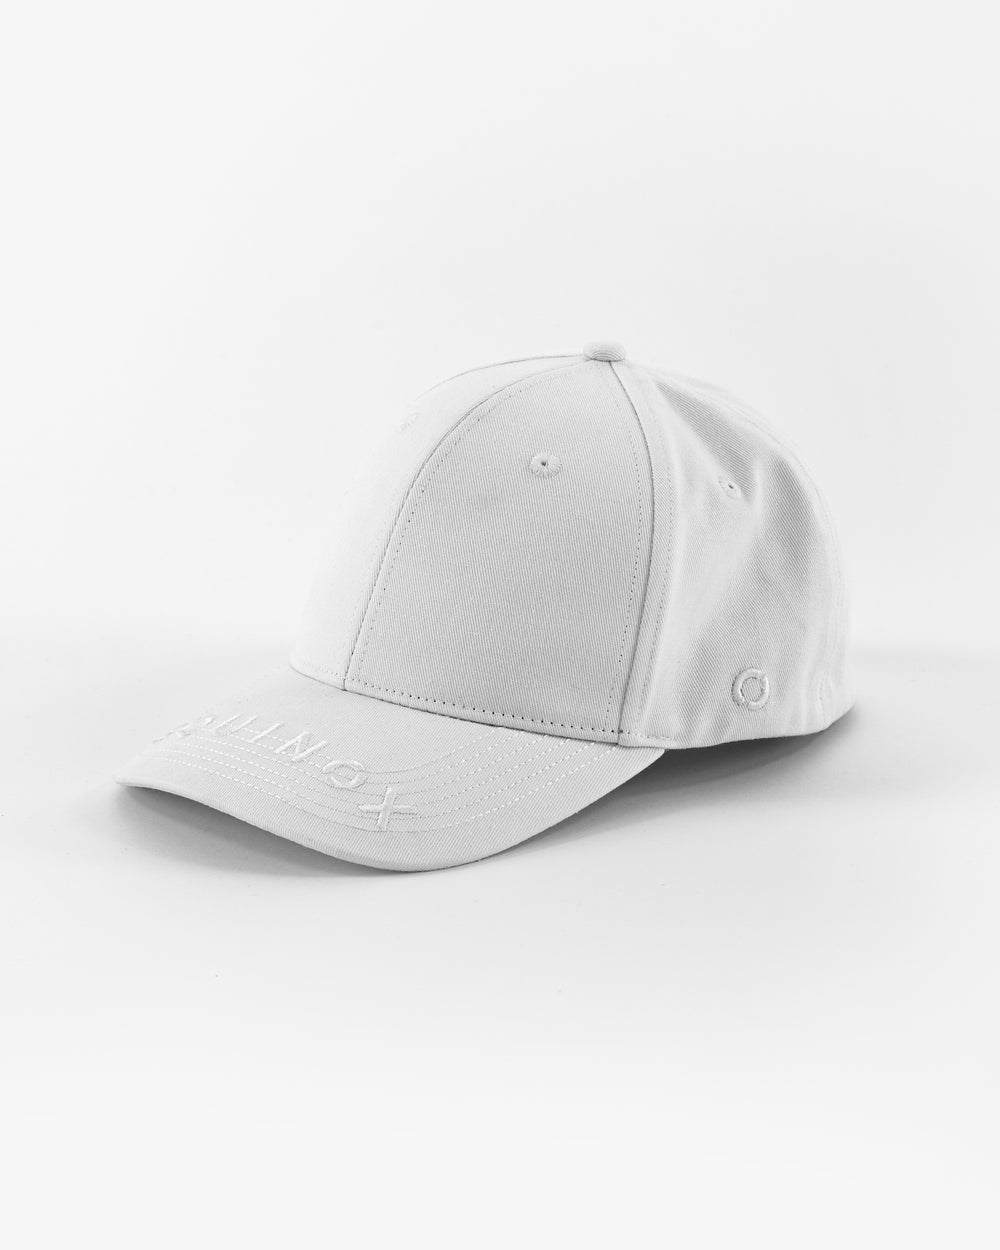 Equinox Flex Hat Shop – Visor Equinox Logo at Fit The